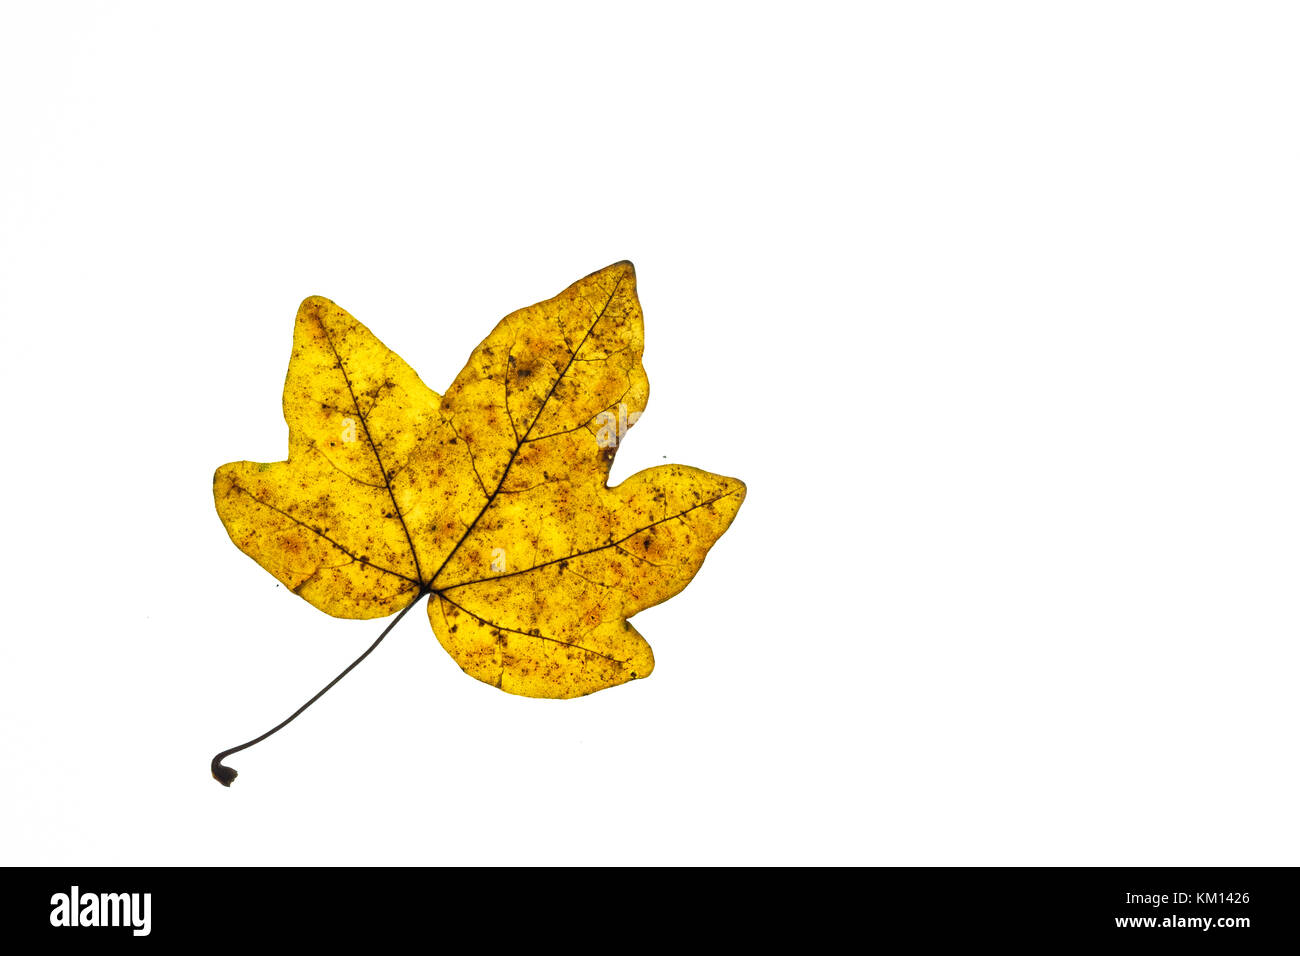 Gelbe Ahorn baum Blatt im Herbst färben Weiß isoliert Stockfoto